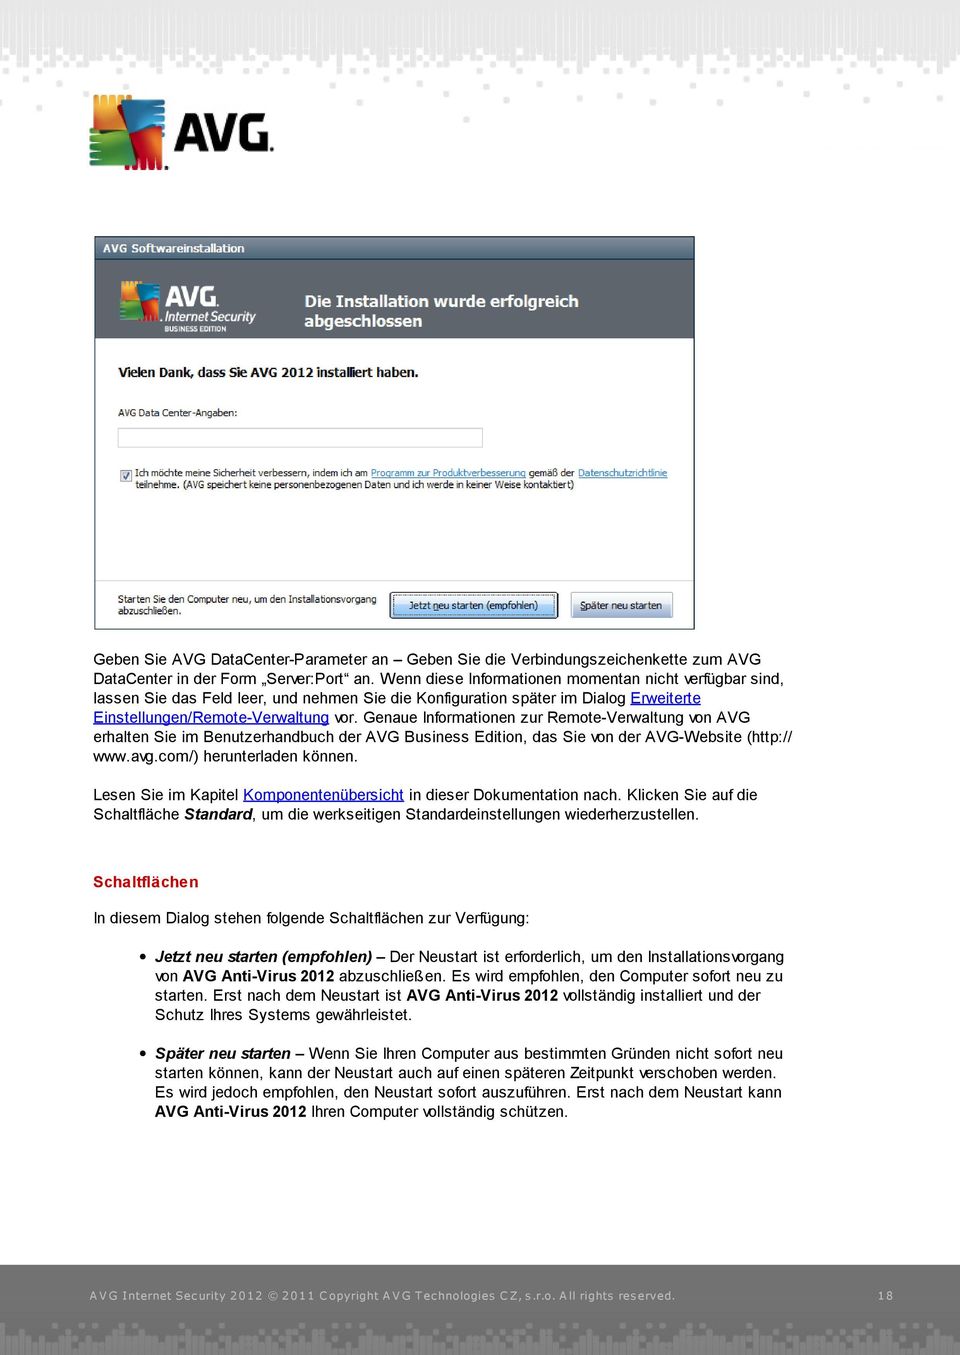 Genaue Informationen zur Remote-Verwaltung von AVG erhalten Sie im Benutzerhandbuch der AVG Business Edition, das Sie von der AVG-Website (http:// www.avg.com/) herunterladen können.